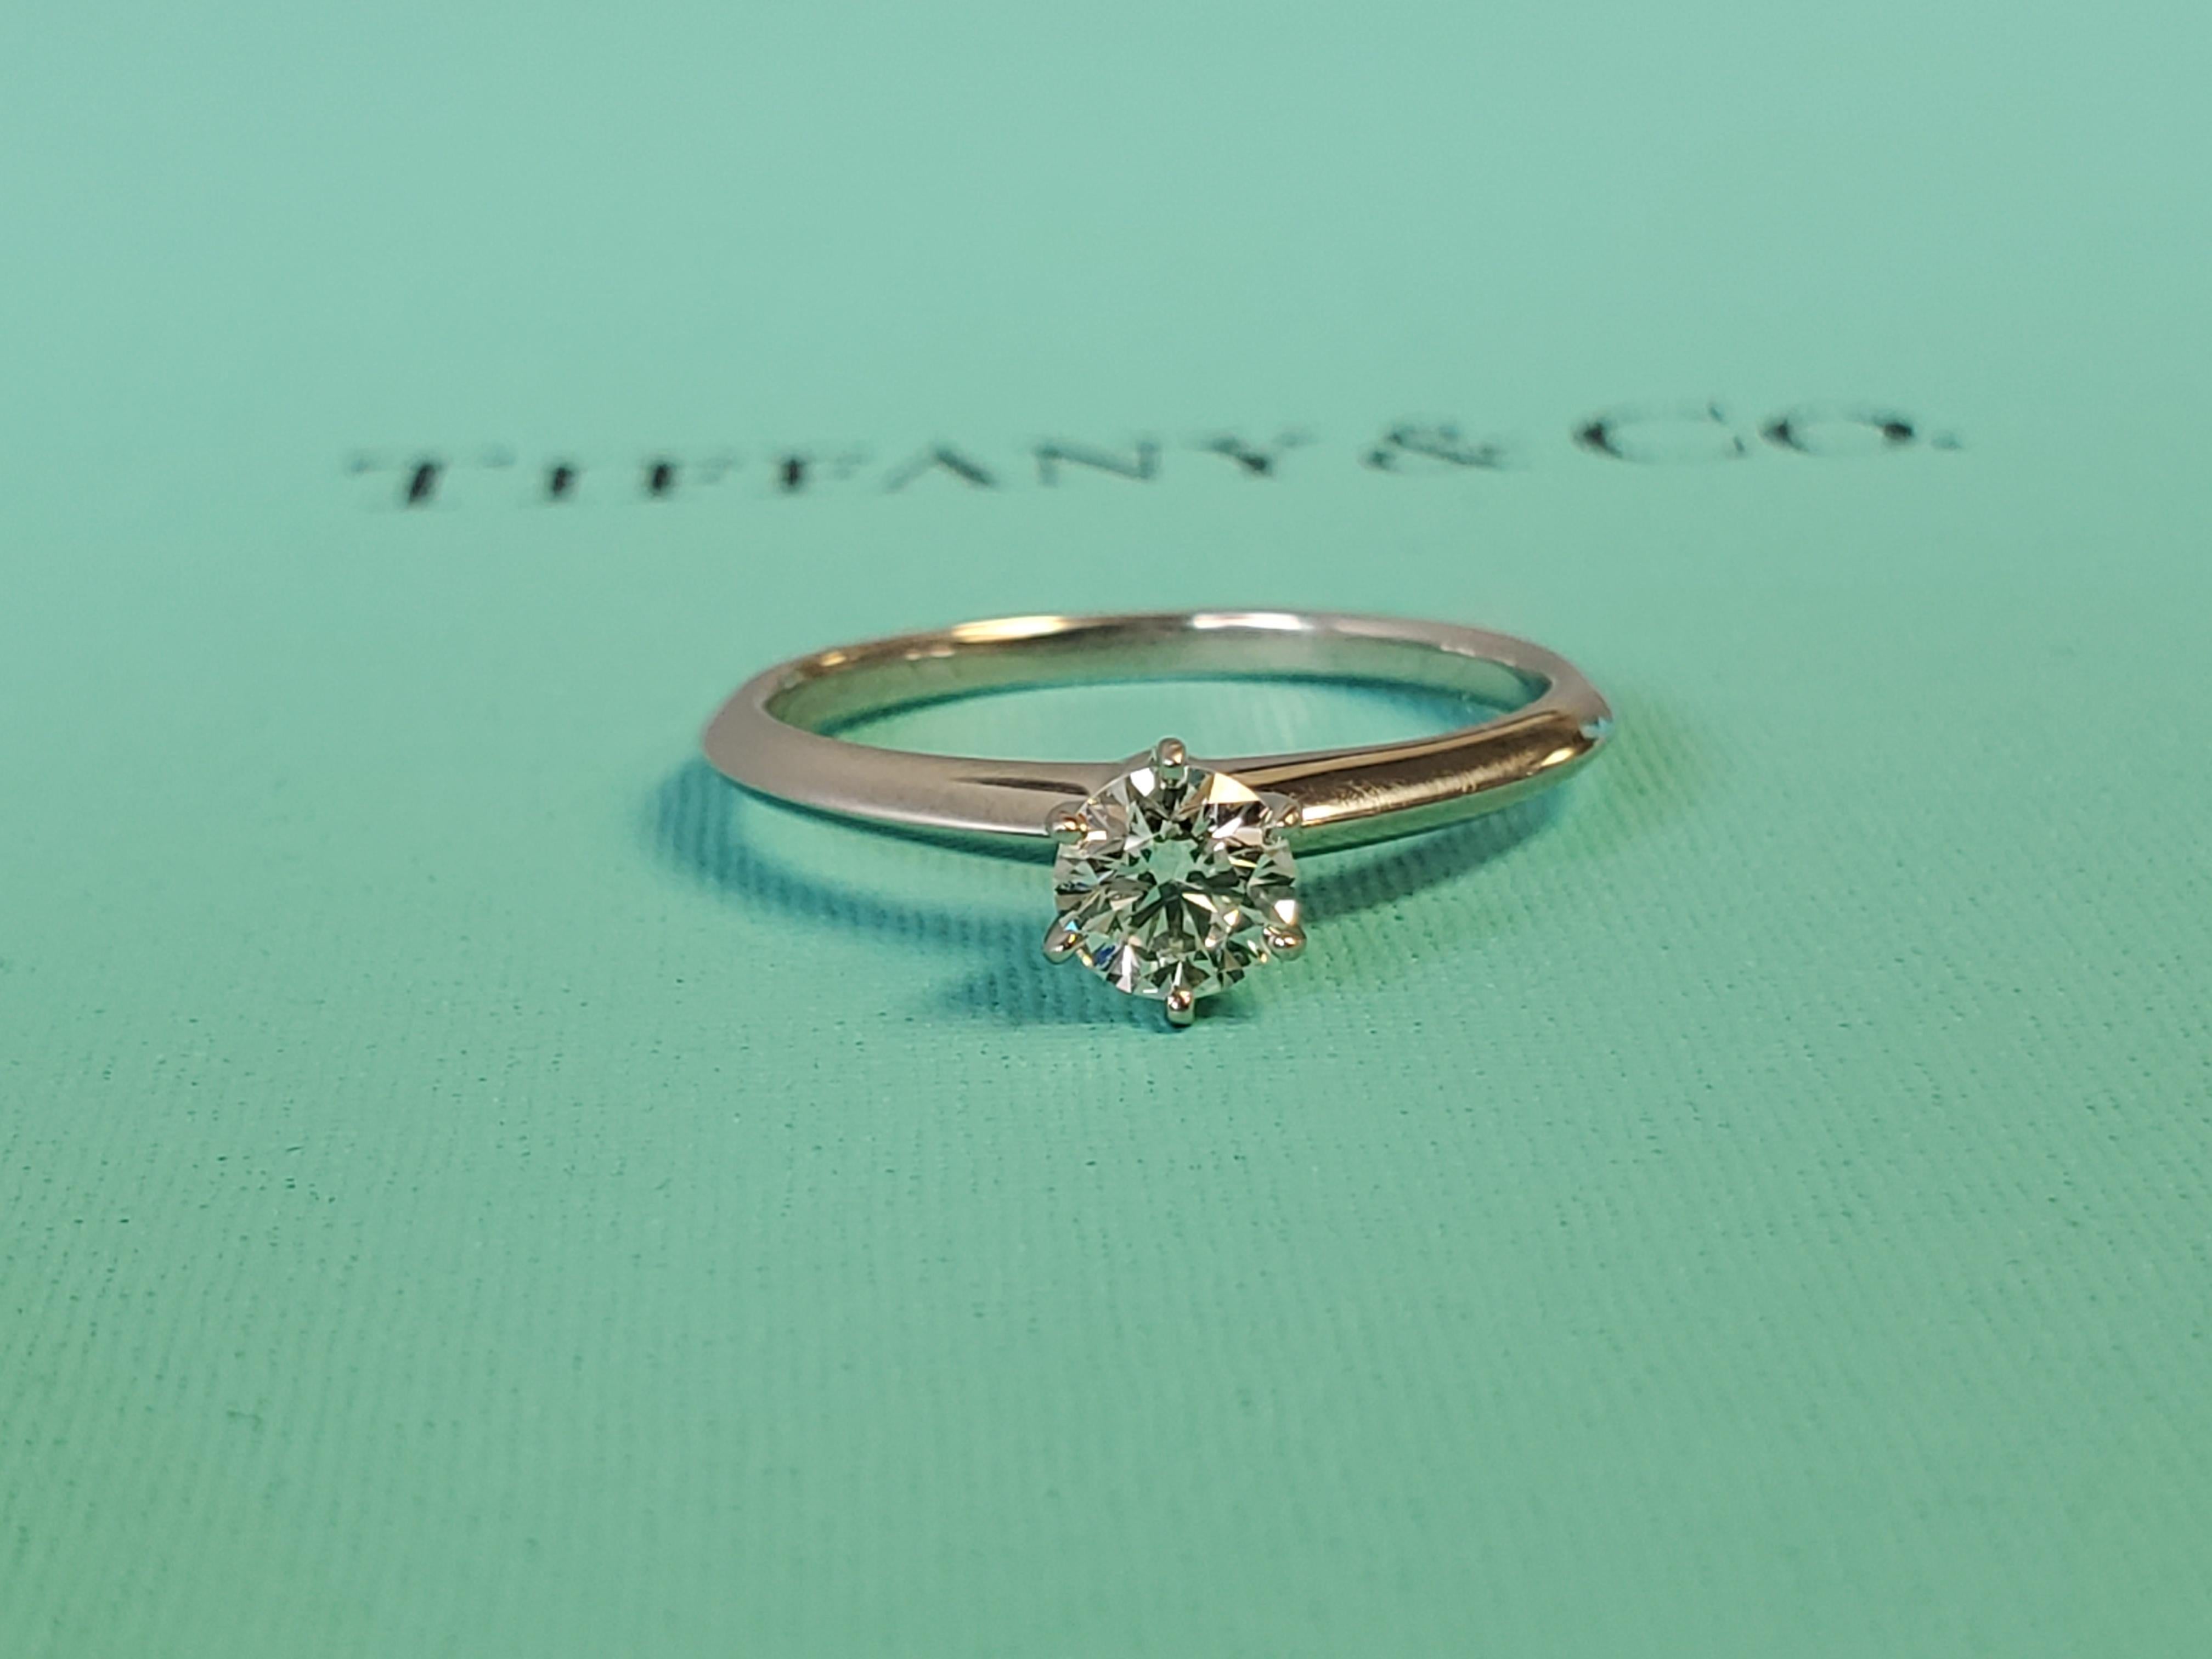 Listed ist ein wie neu Tiffany & Co. Platin Diamant Solitär Verlobungsring komplett mit Boxen und Papiere. Ich glaube nicht, dass dieser Ring jemals getragen wurde und er ist auf den 23. Juli datiert, alles ist tadellos. Der Mittelstein ist ein